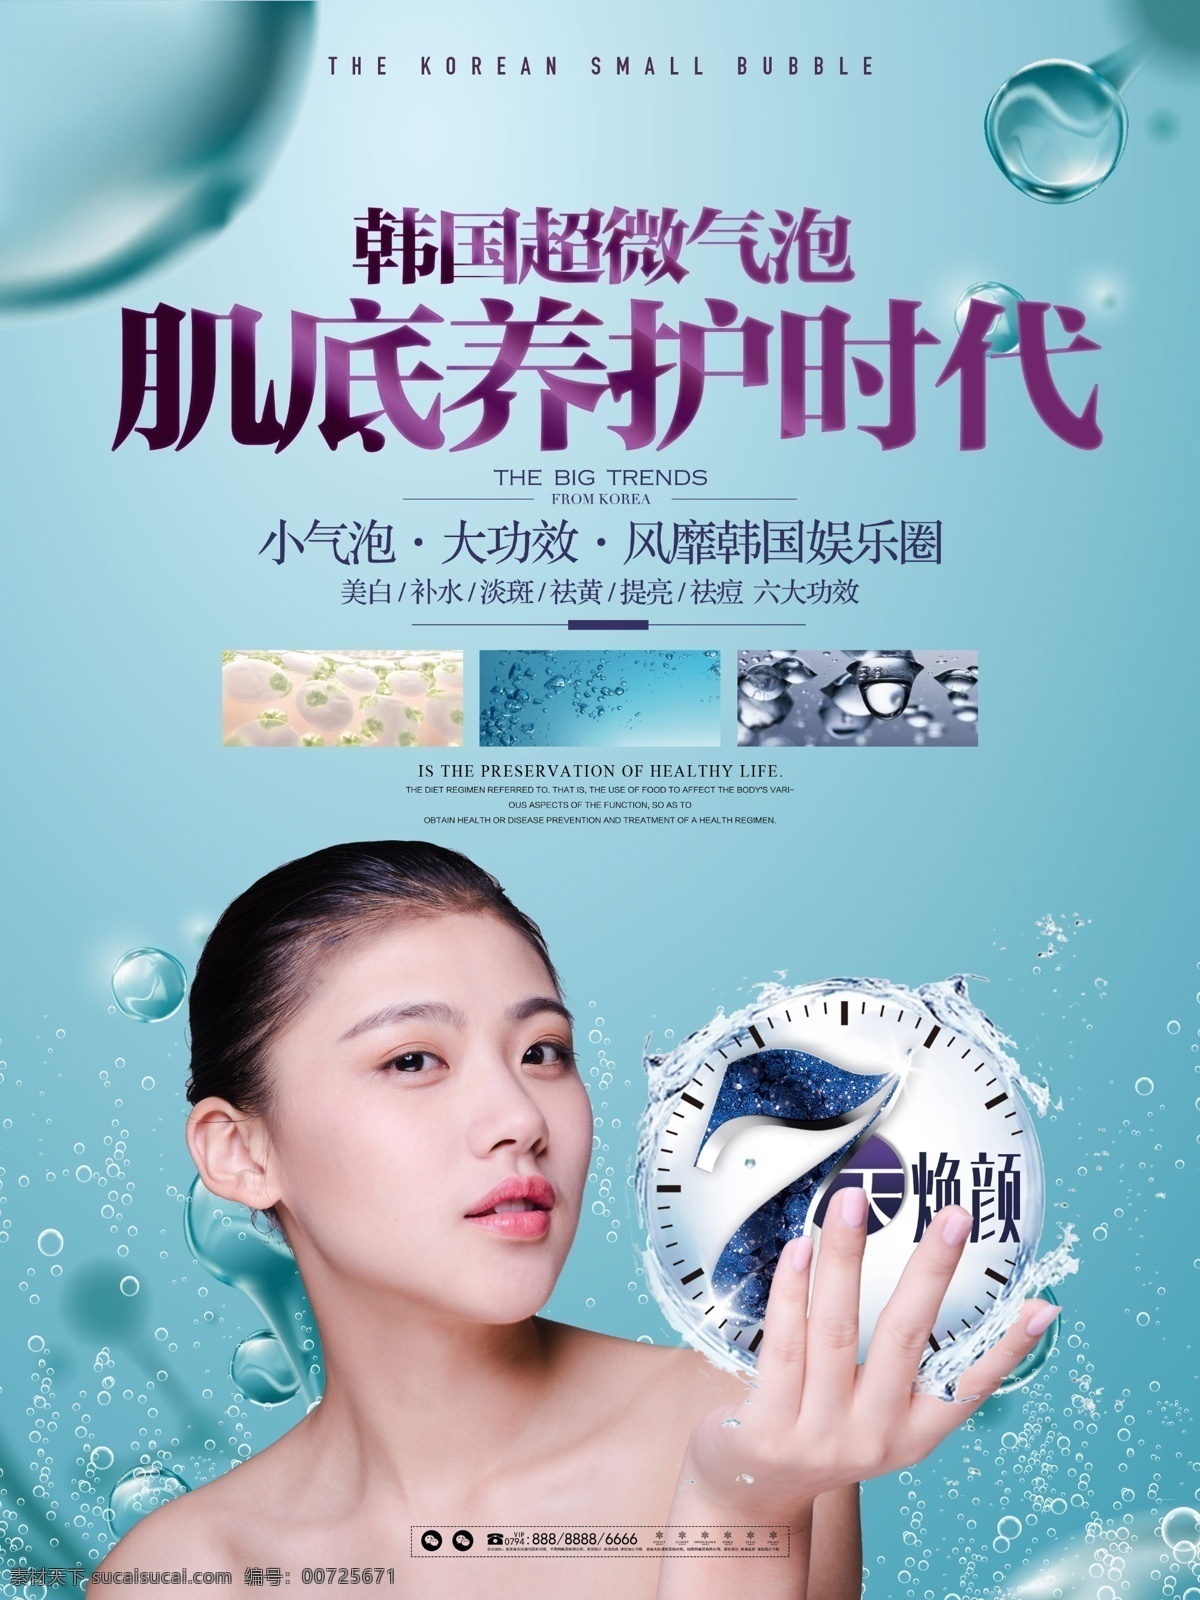 清新 医学美容 韩国 小 气泡 护肤 宣传海报 展板 医学 美容 化妆品 美妆 医疗 整形 宣传 海报